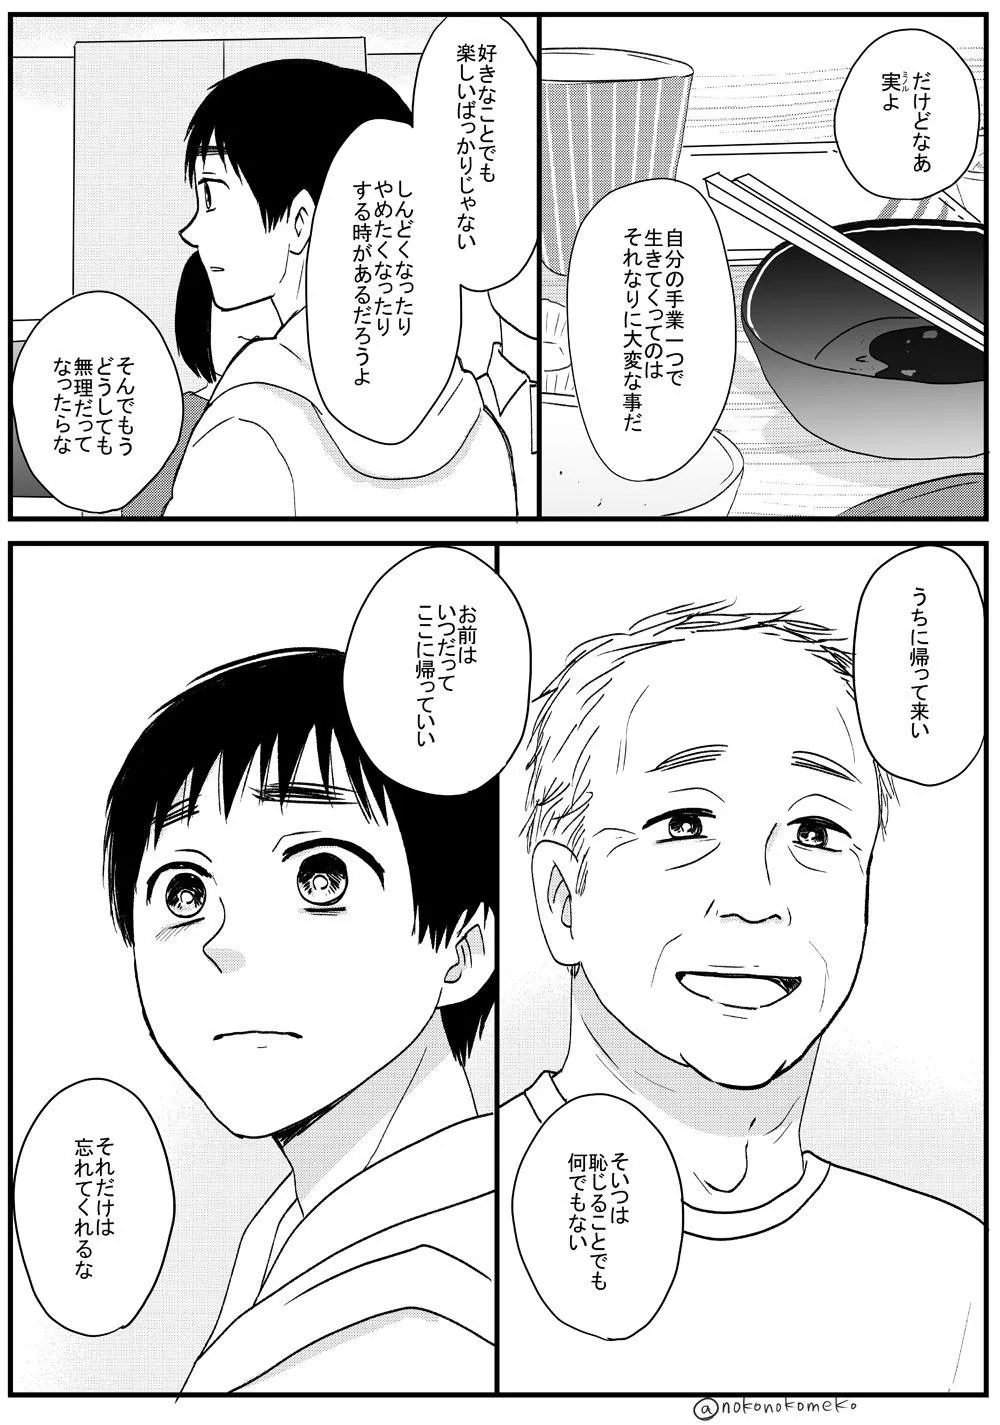 『喋る大根と少年が出会ってツイッターデビューする漫画』29